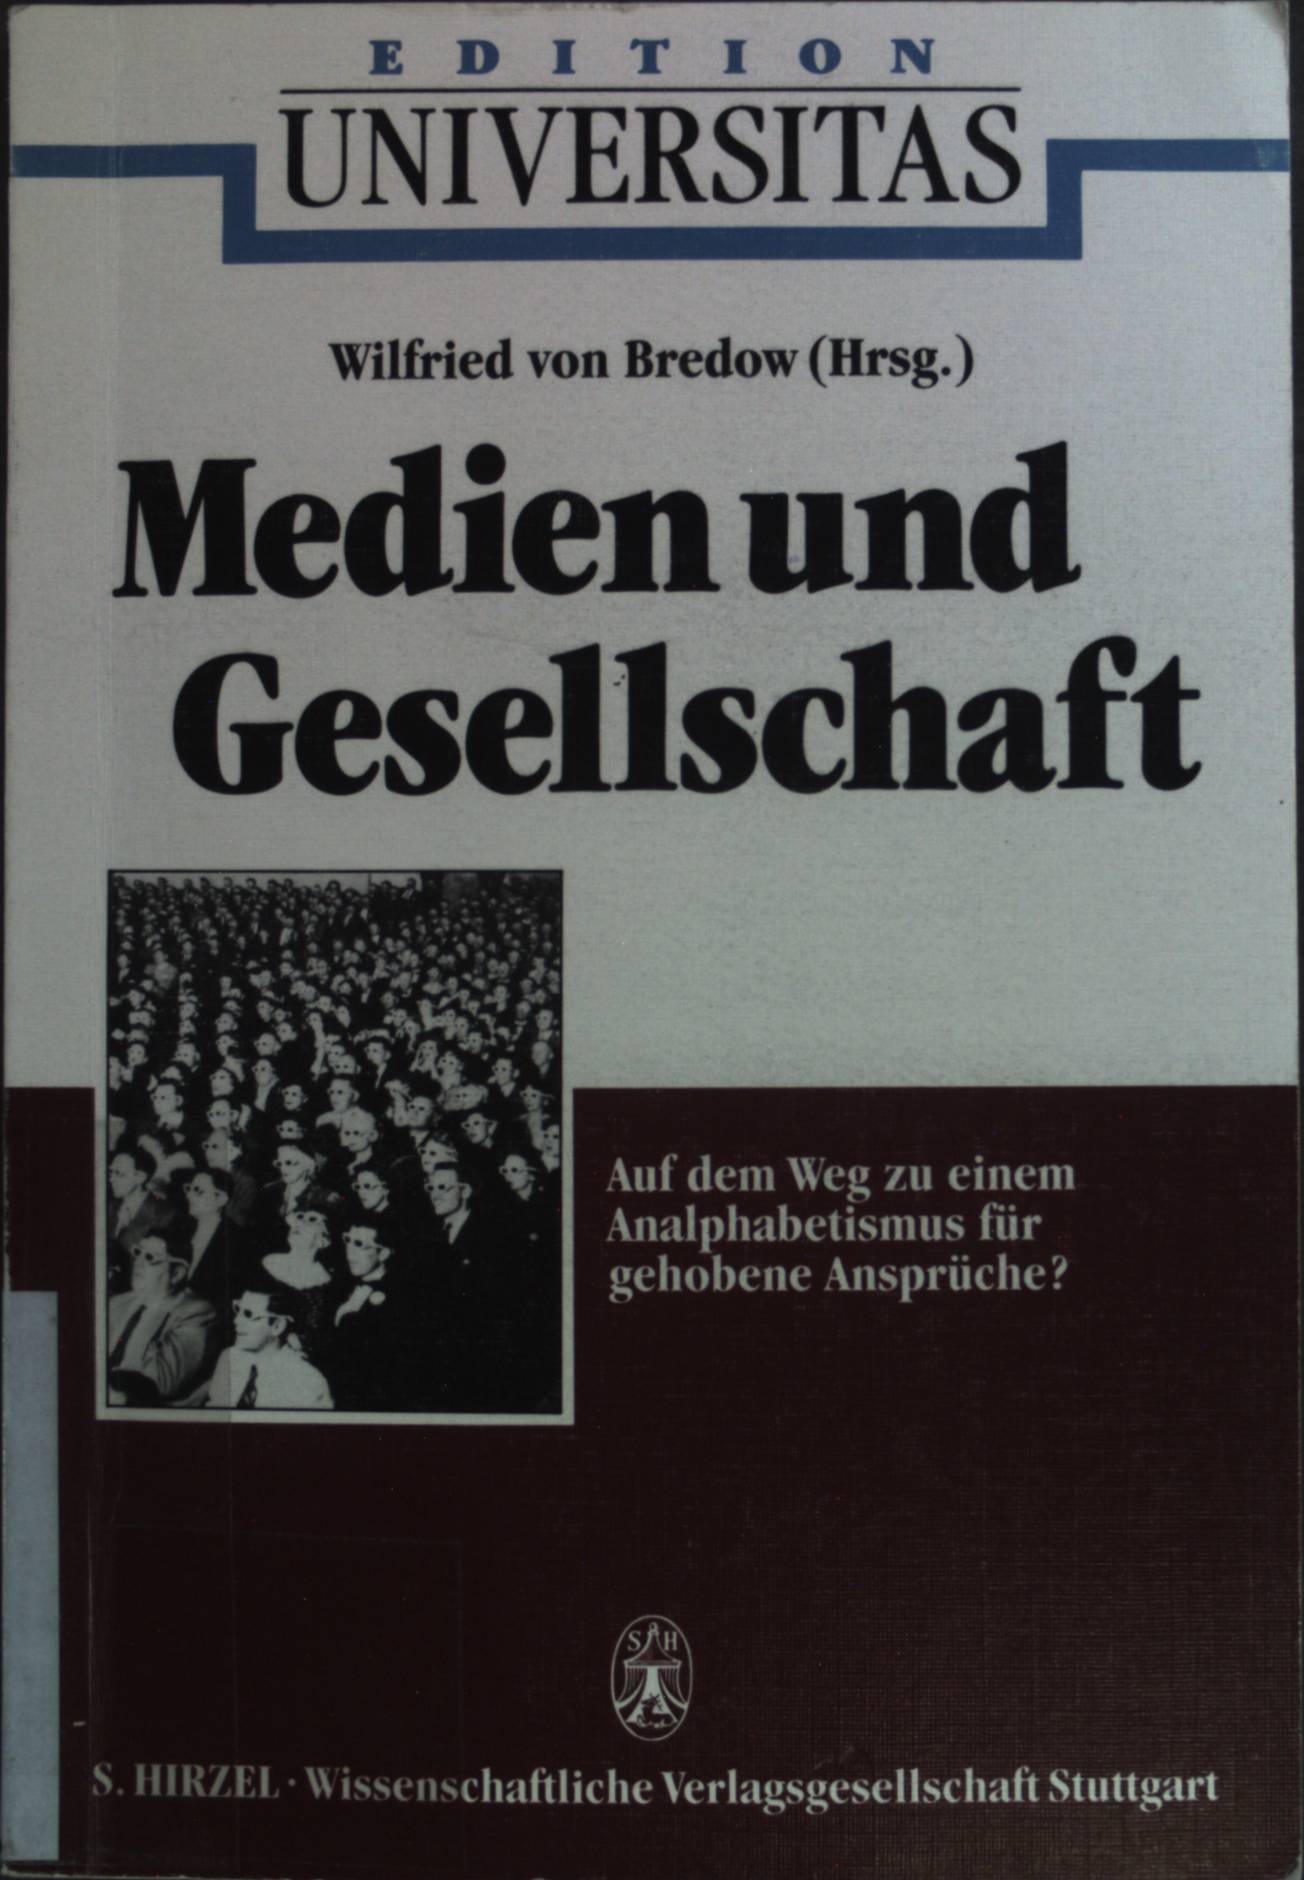 Medien und Gesellschaft. Edition Universitas - Bredow, Wilfried von und Wolfgang Bergsdorf